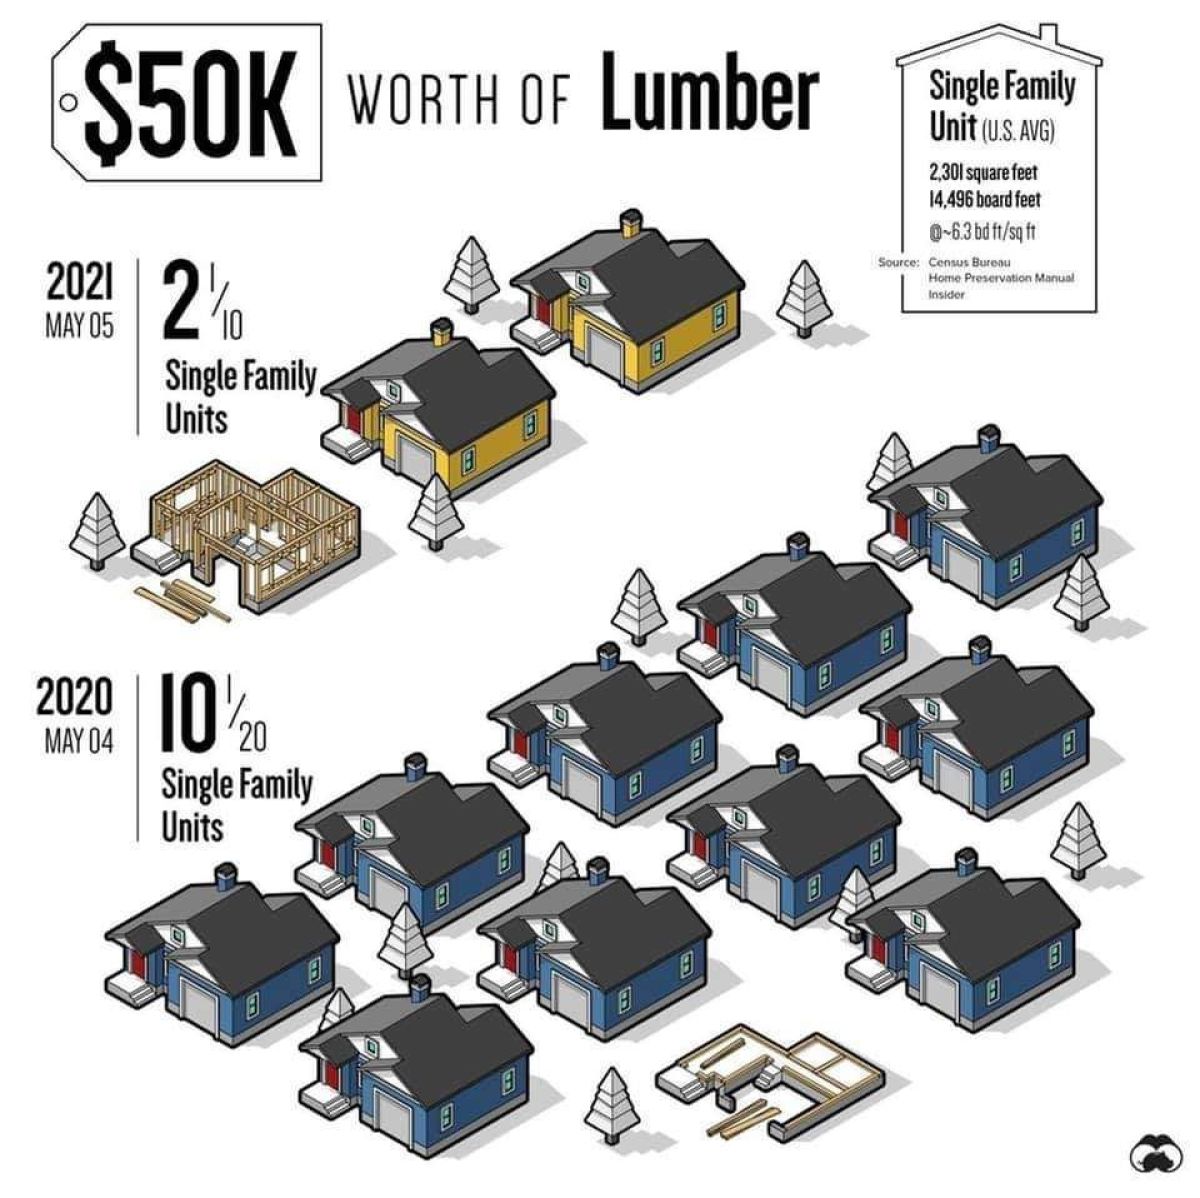 Worth of Lumber graphic chart